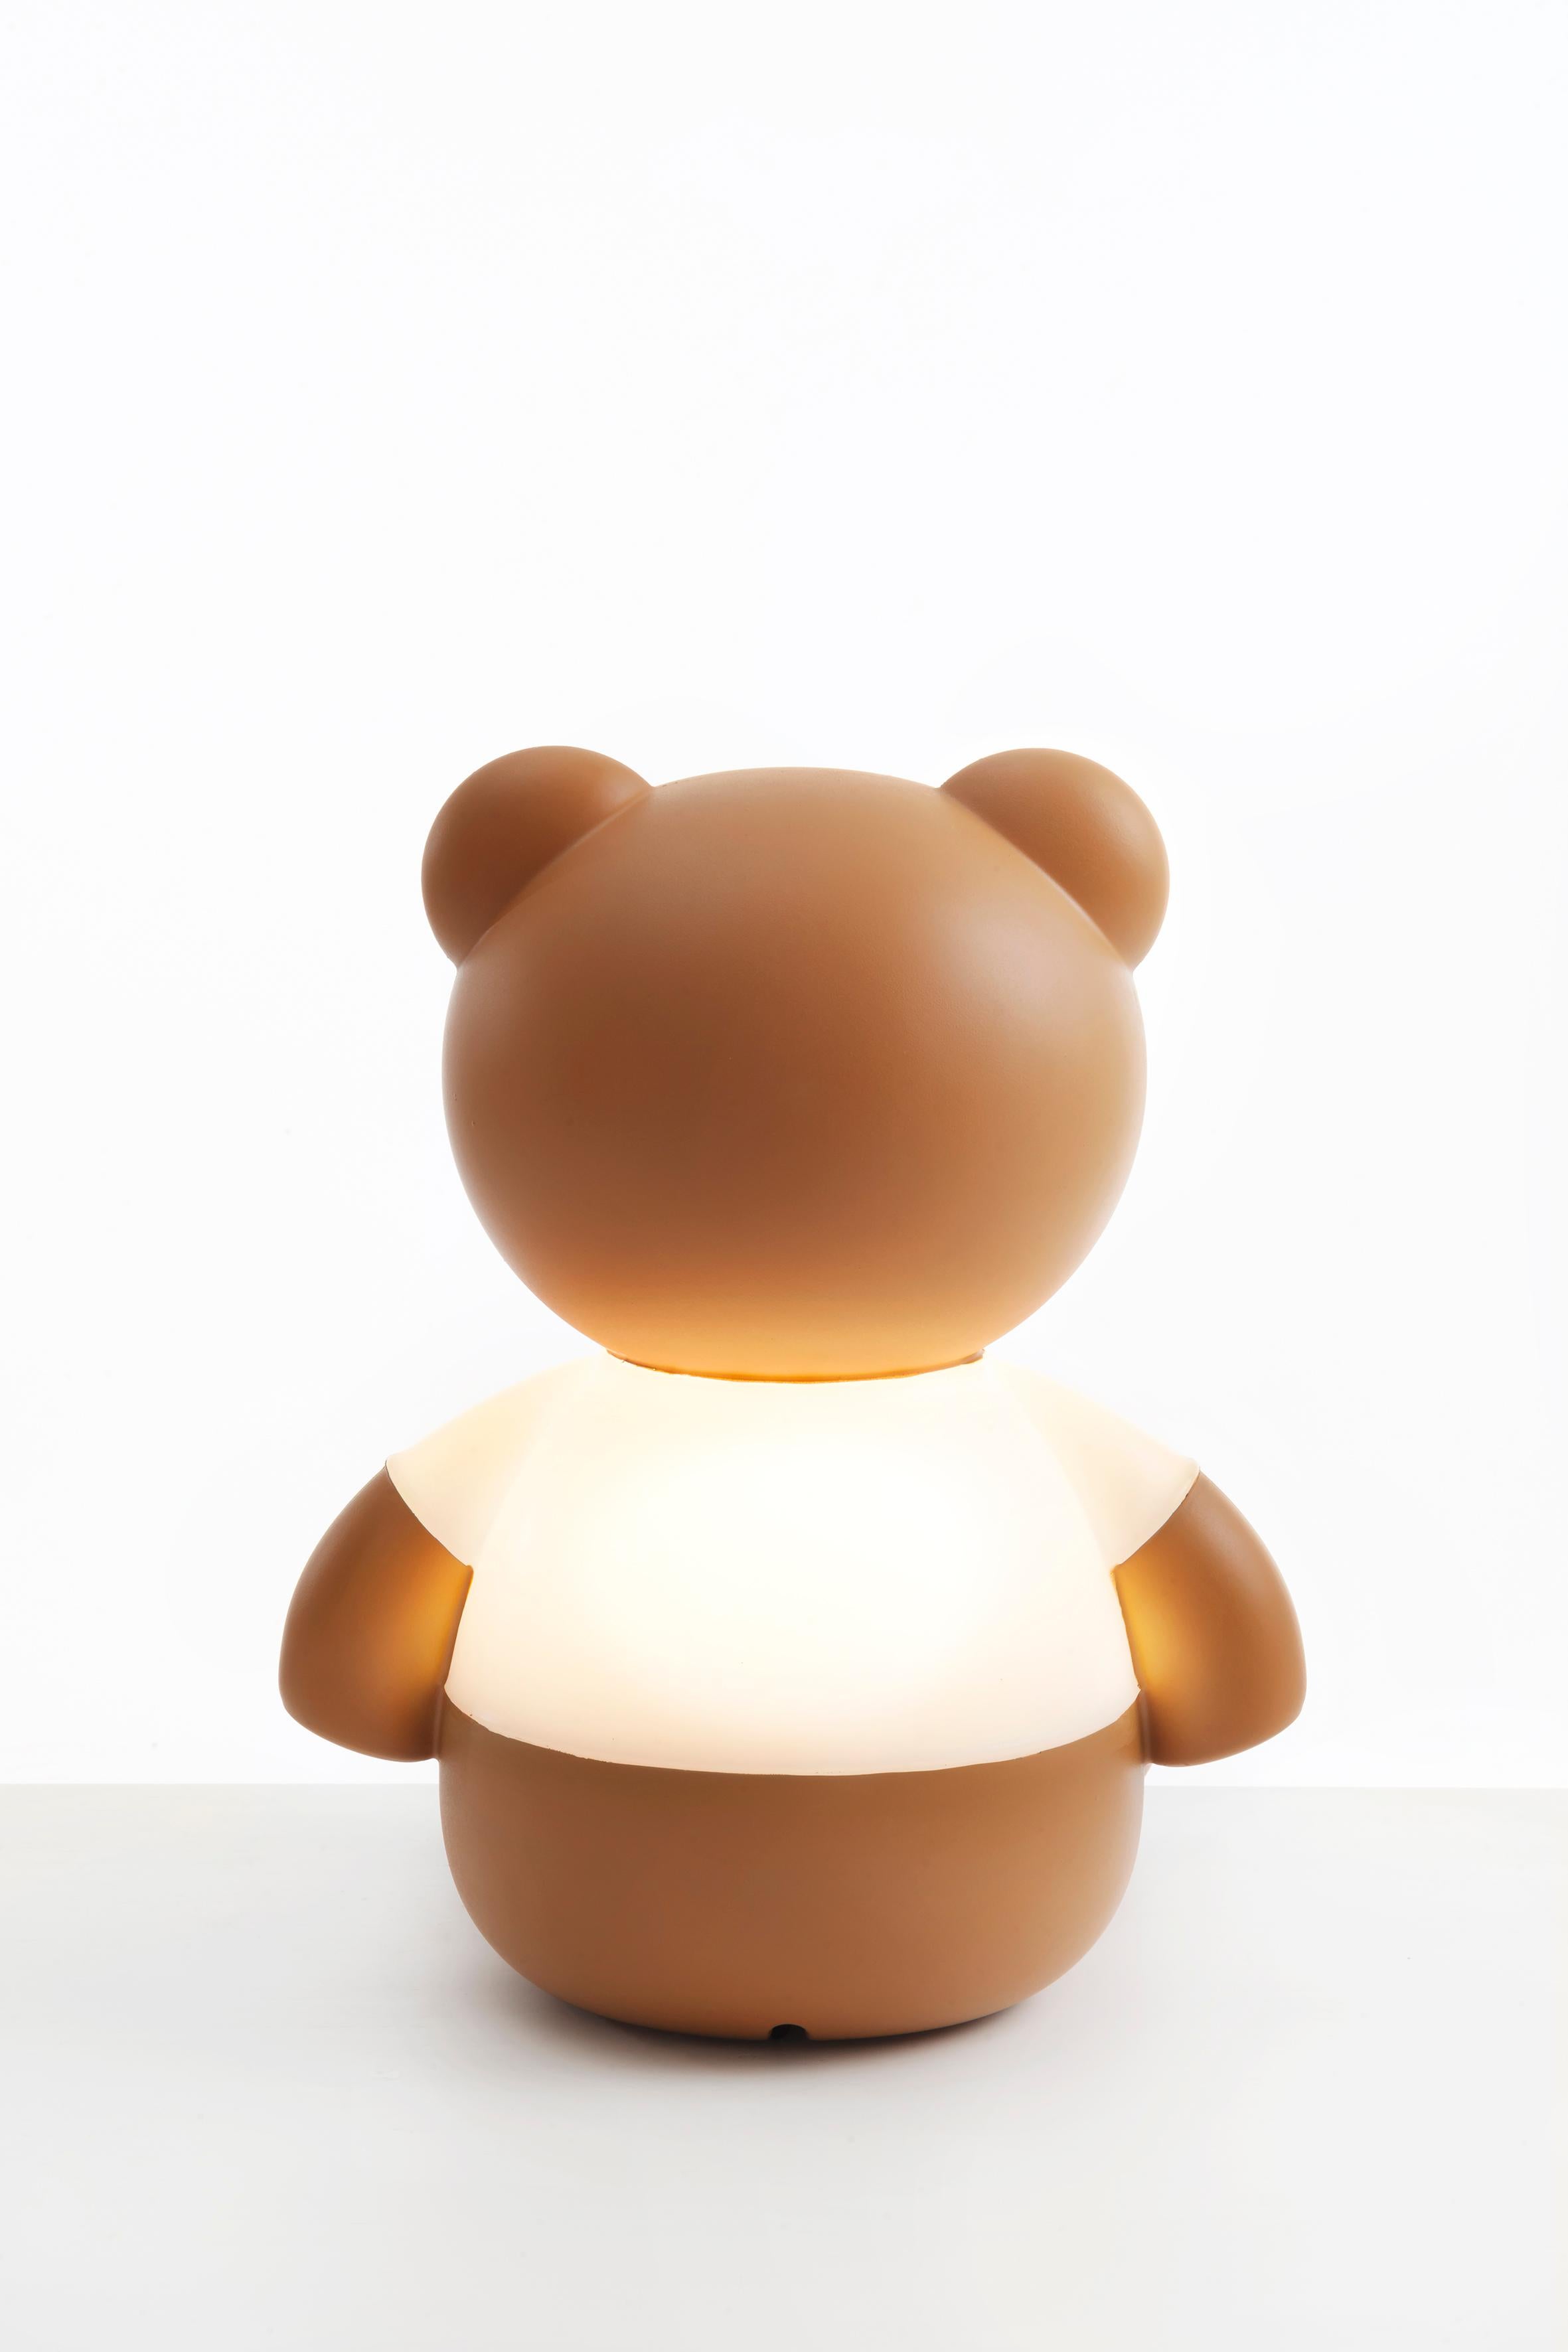 L'ours iconique de Moschino, relancé par le designer, devient une lampe de table pour Kartell qui interprète le style ludique, irrévérencieux et coloré que les deux marques ont en commun.